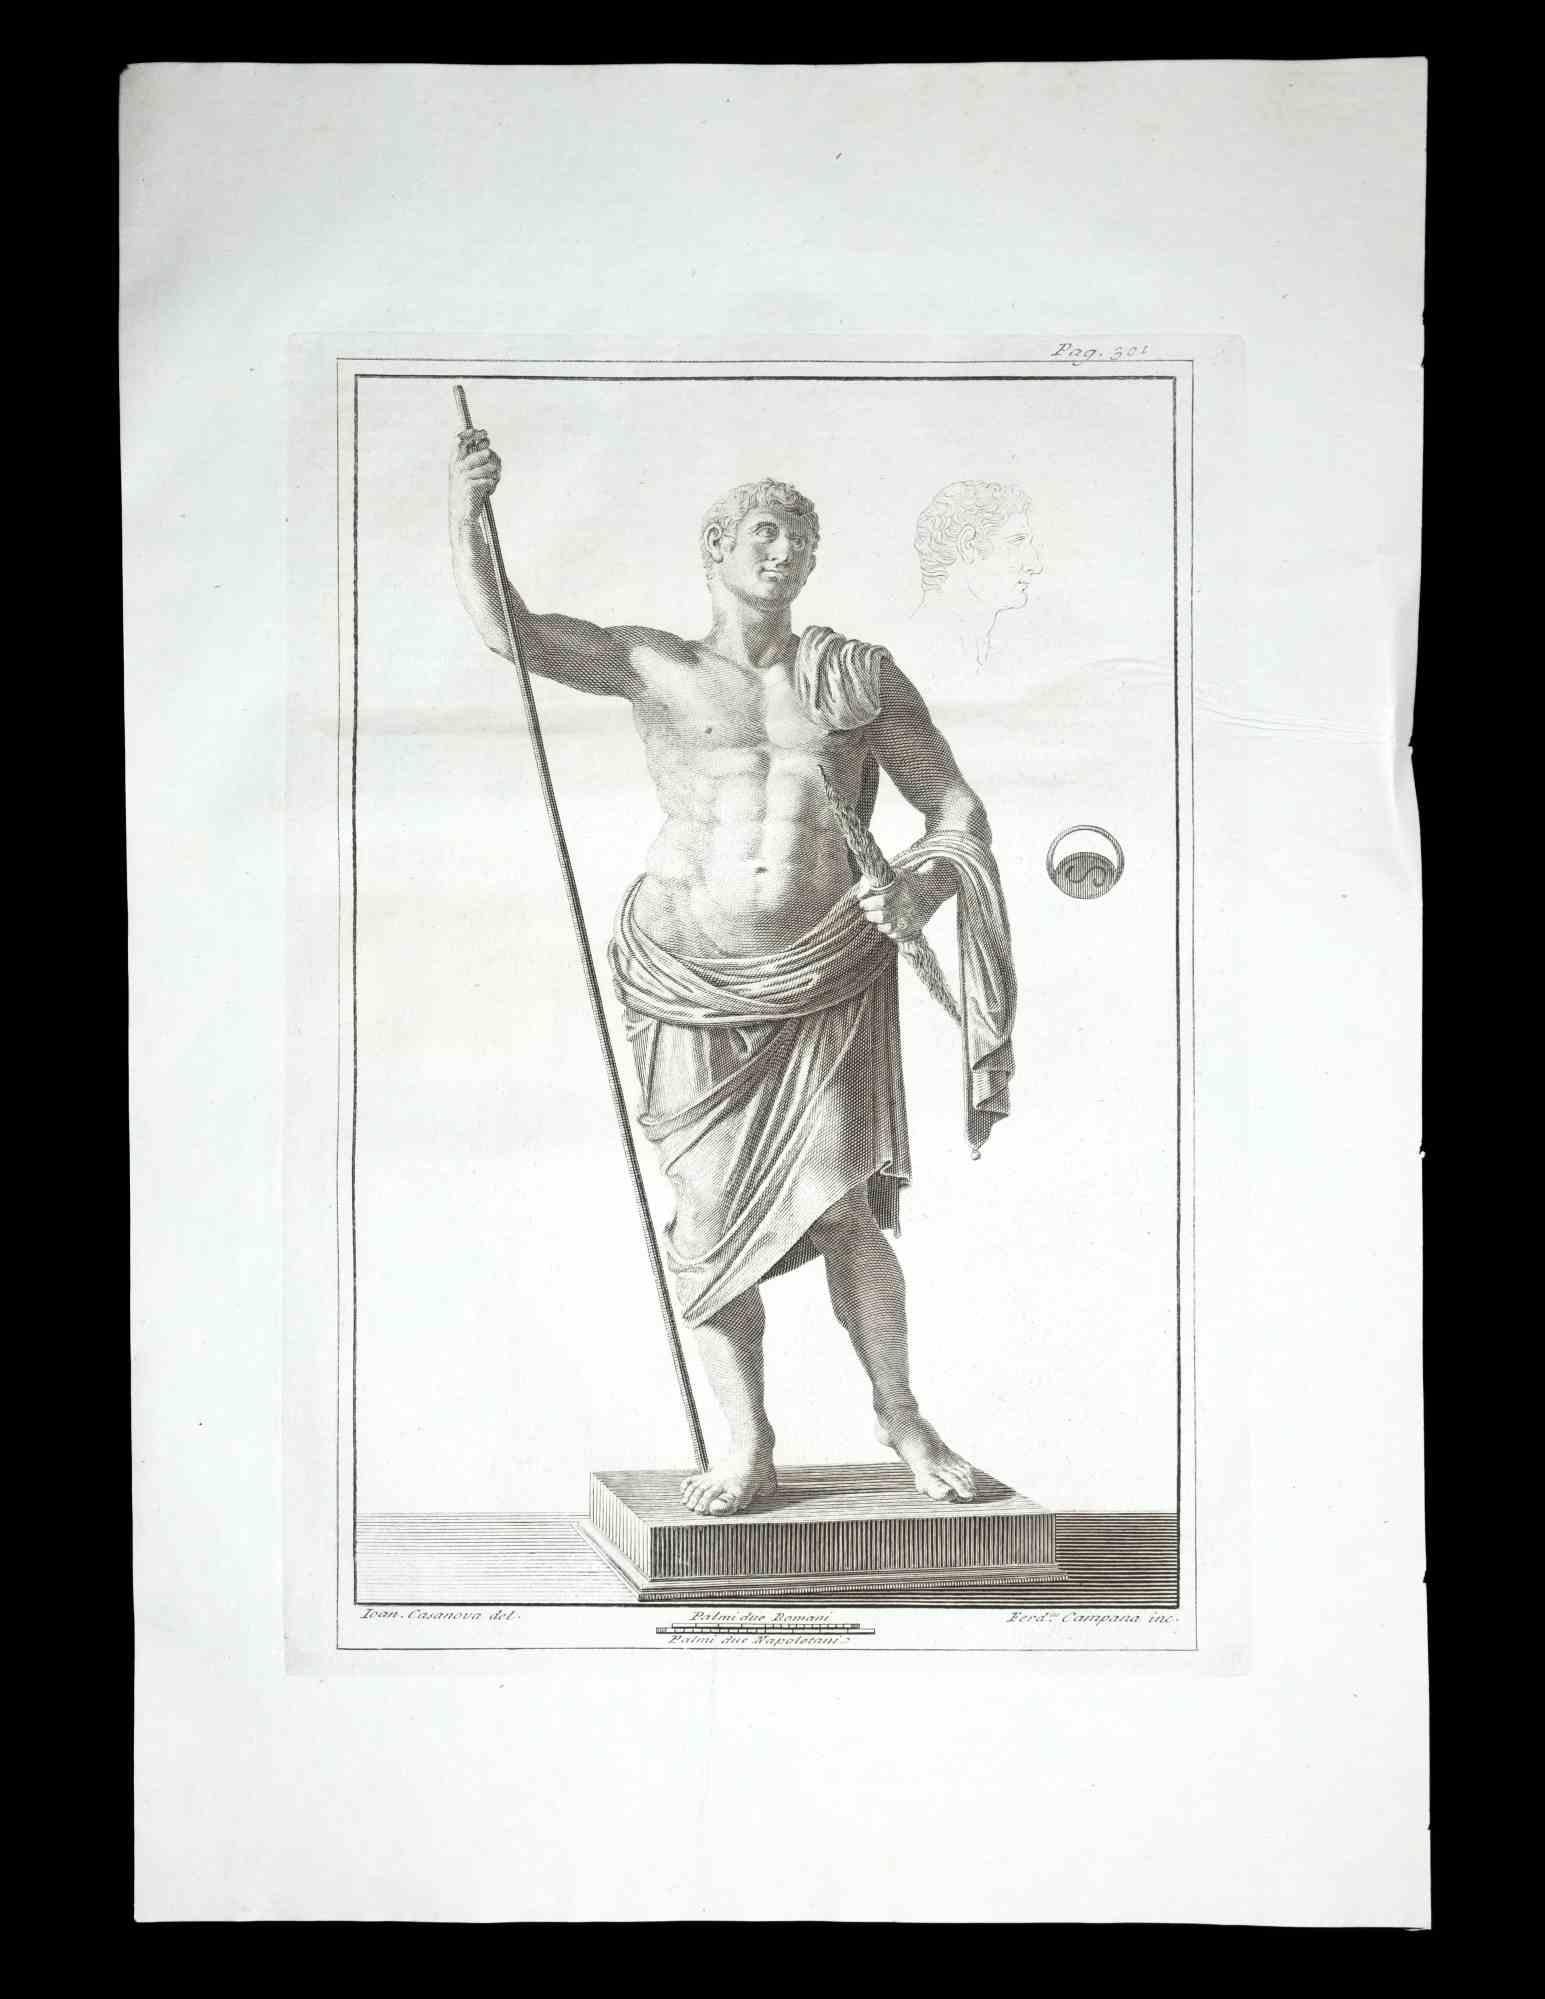 Statue romaine antique, de la série "Antiquités d'Herculanum", est une gravure originale sur papier réalisée par Ferdinando Campana au XVIIIe siècle.

Signé sur la plaque, en bas à droite.

Bon état avec de légers plis.

La gravure appartient à la